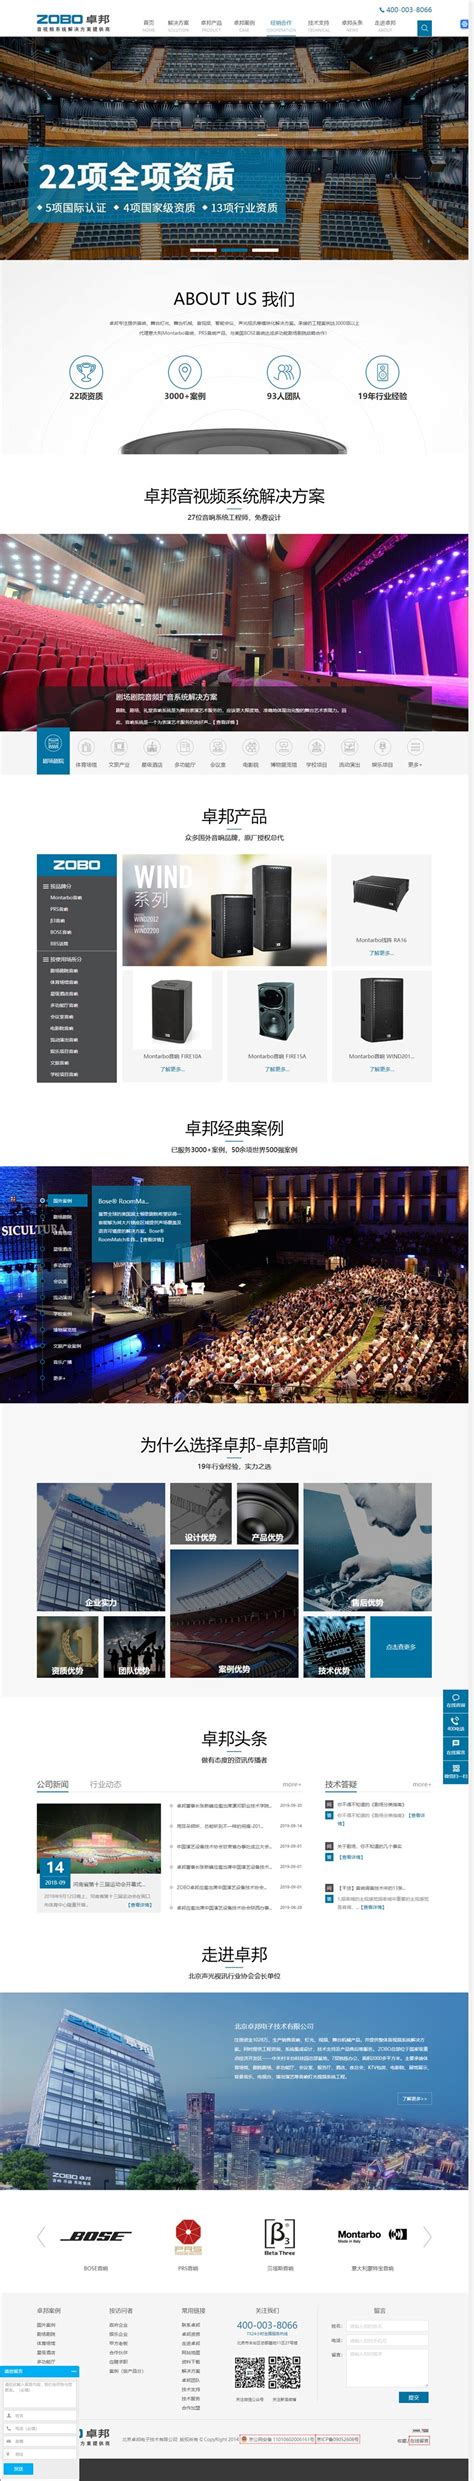 徳亦达企业管理咨询英文网站设计-网站设计低价格好品质-正版建站